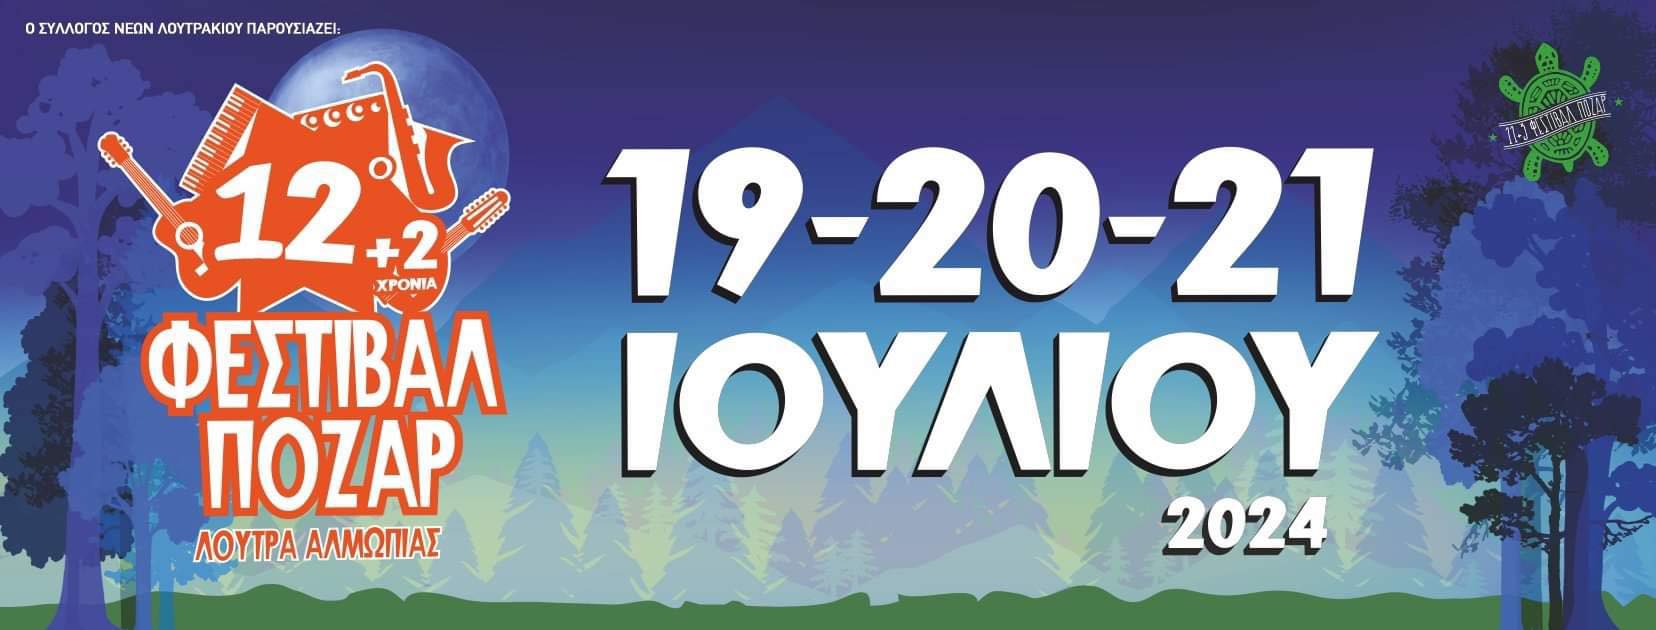 Φεστιβάλ Πόζαρ 2024